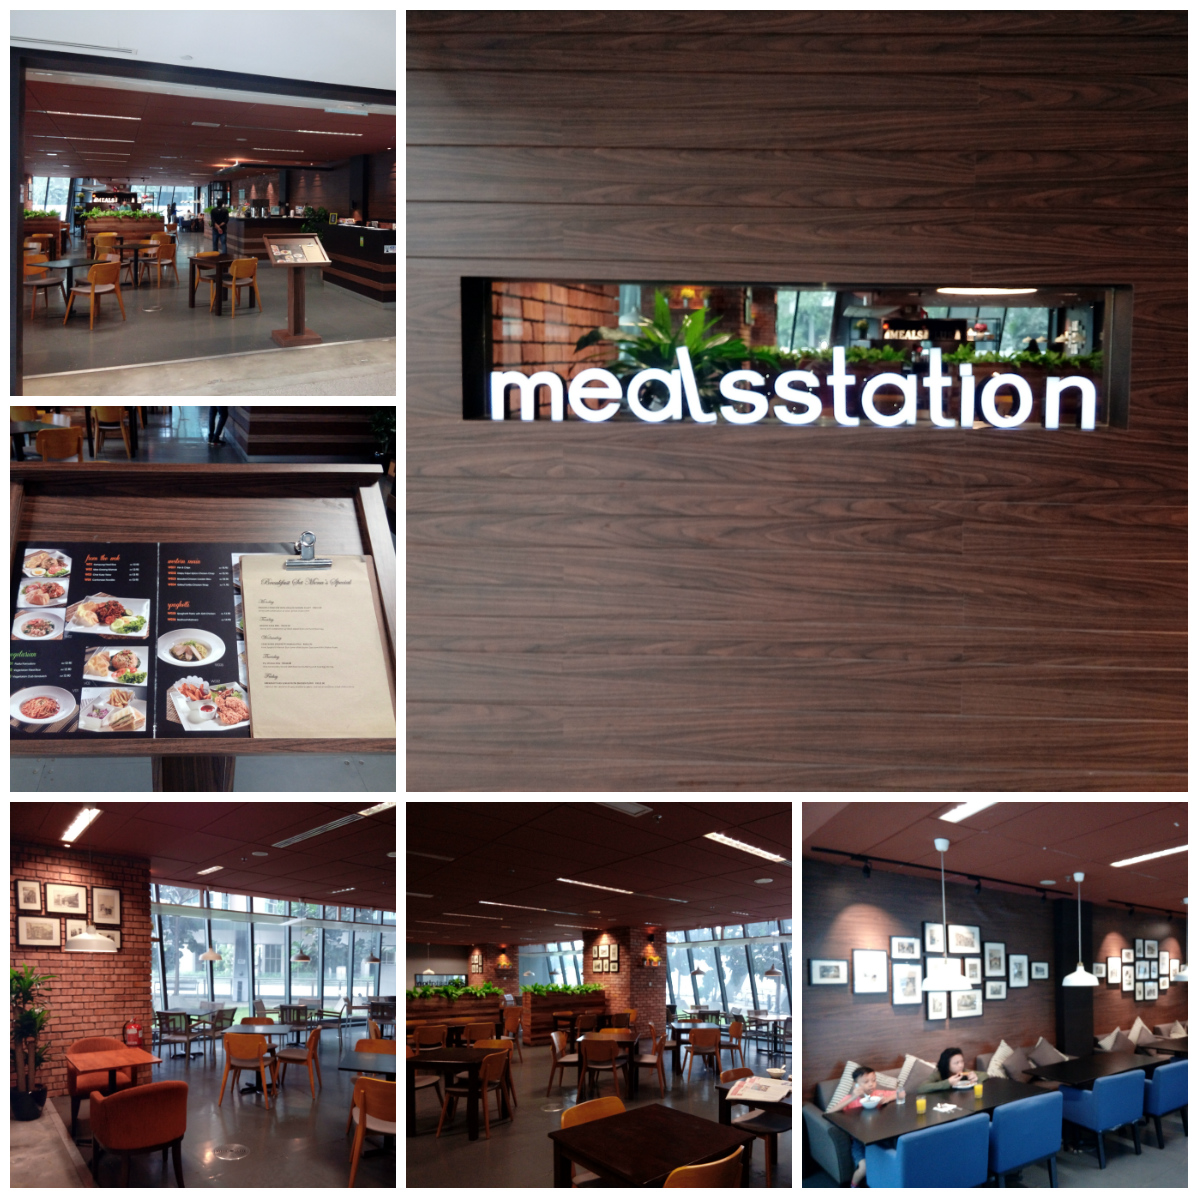 meals station